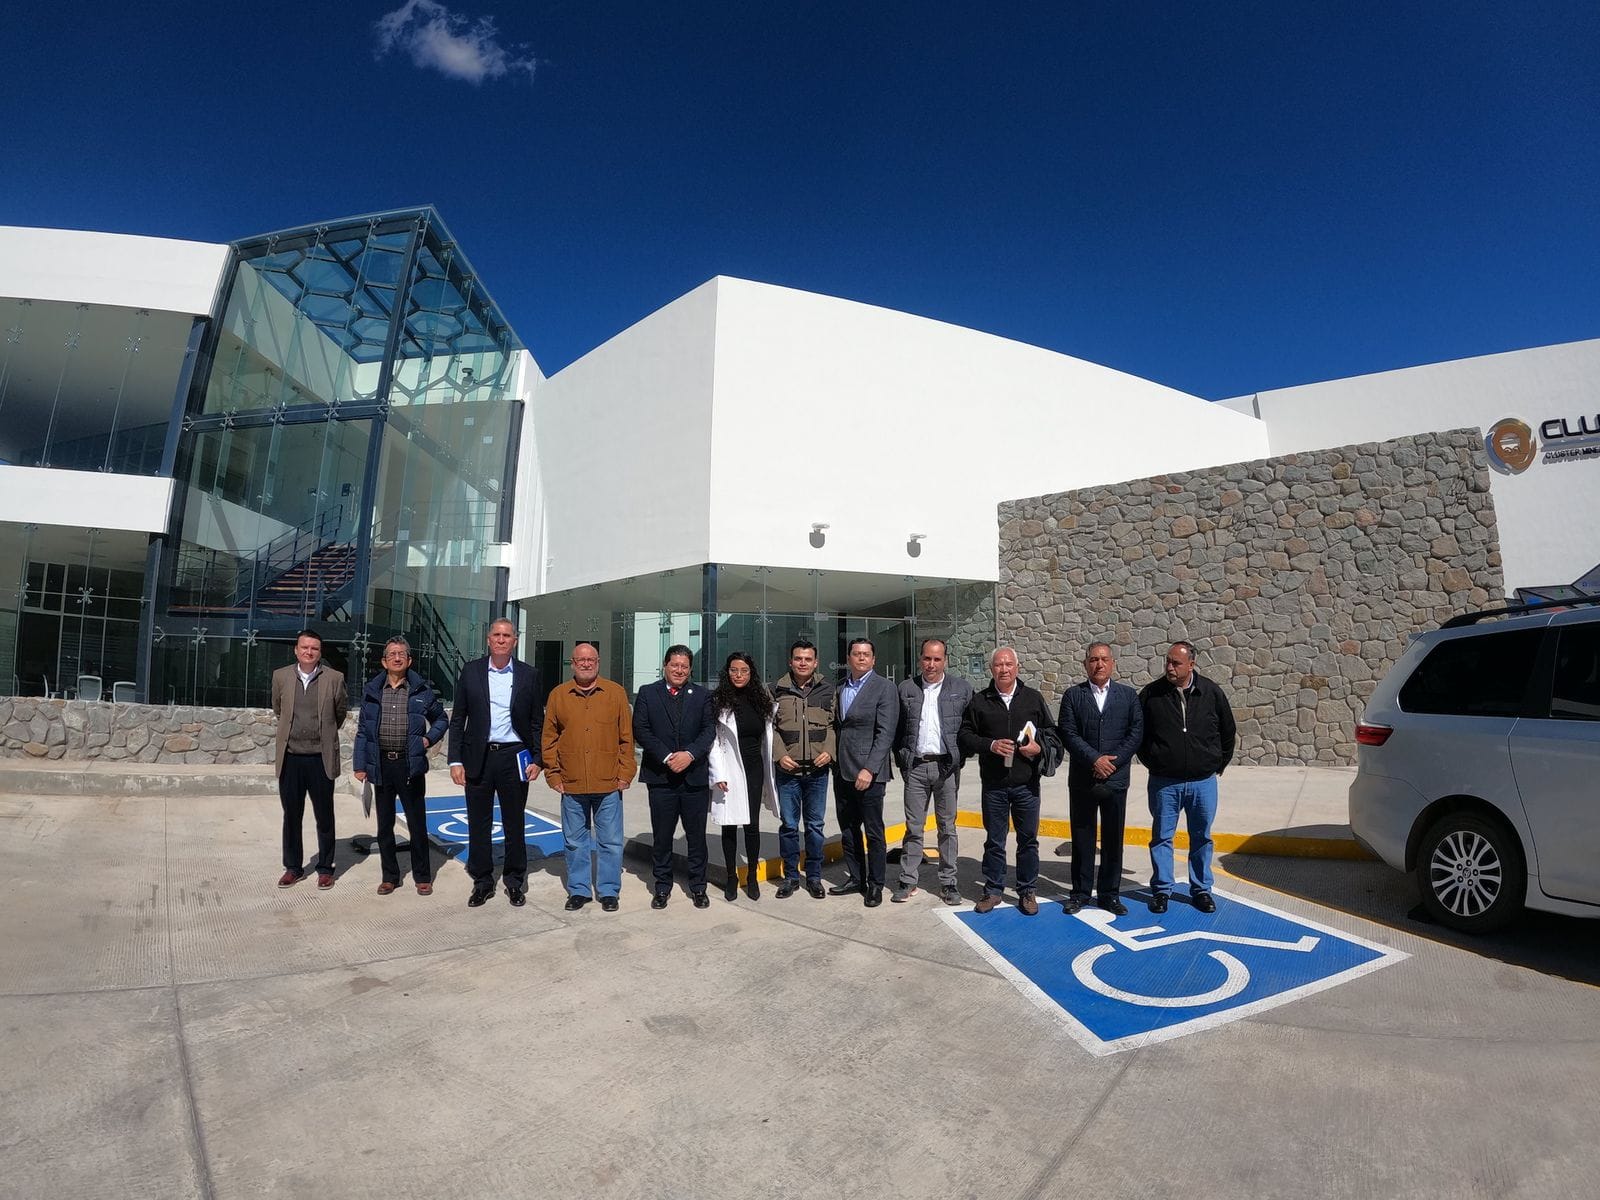 Visitan diputados las instalaciones del Centro de Minería del Clúster Minero de Zacatecas